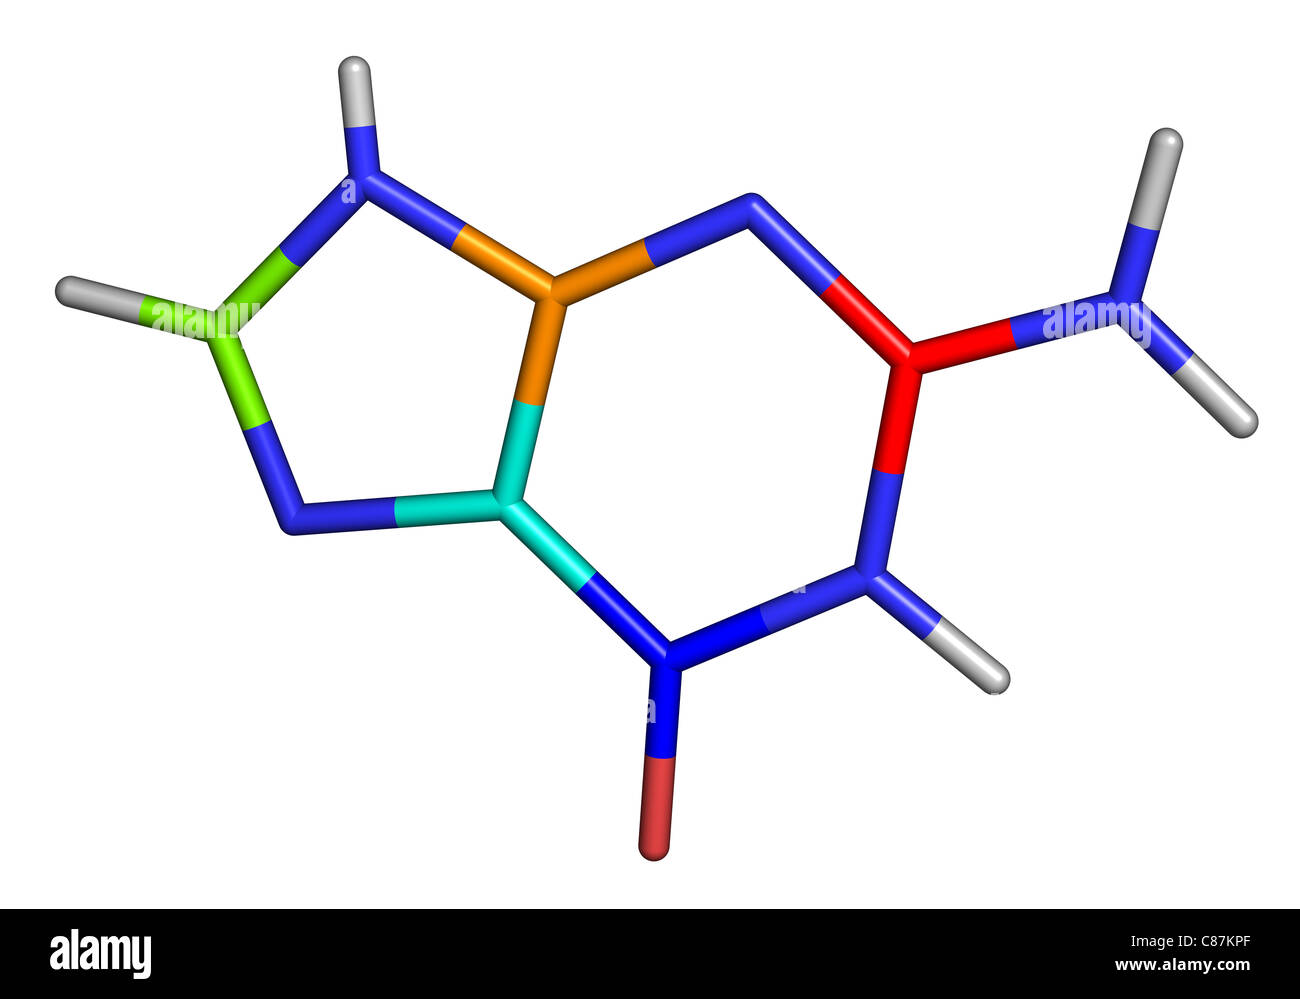 Guanin gehört zu den vier wichtigsten Nucleobasen in Nukleinsäuren DNA gefunden. Stockfoto